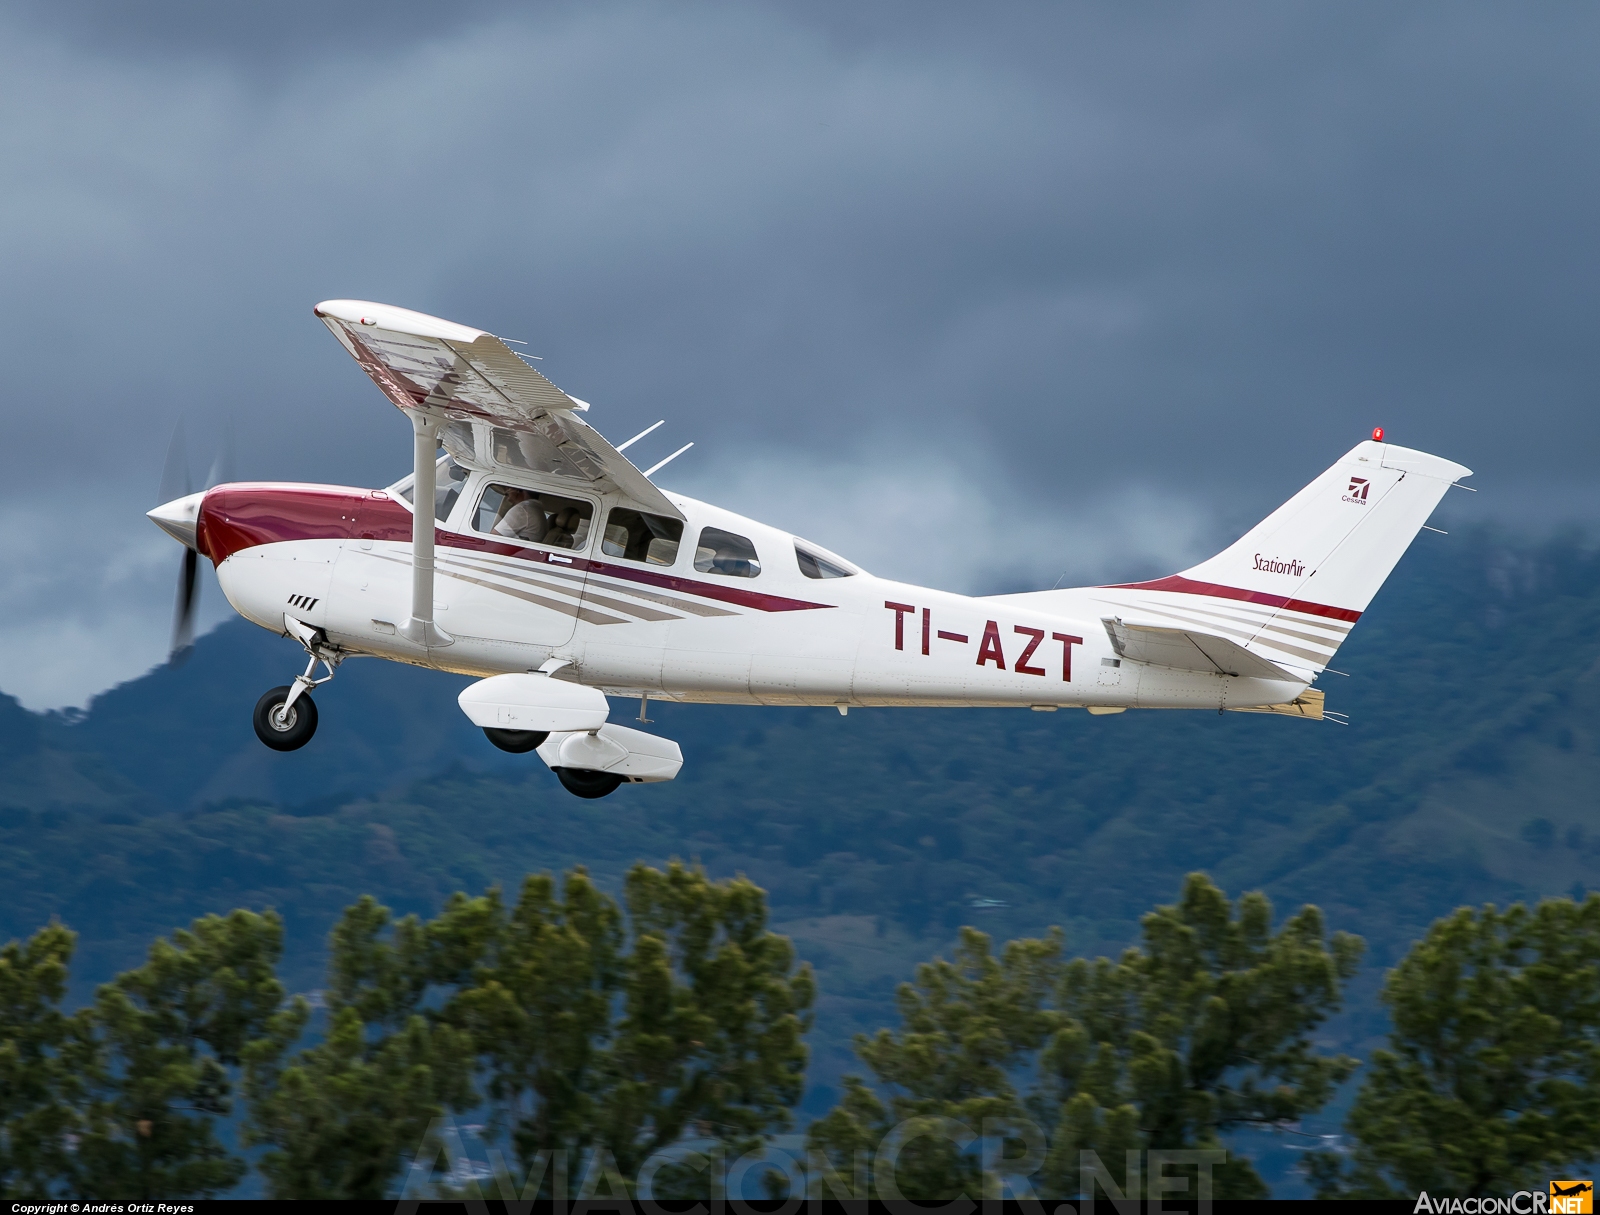 TI-AZT - Cessna 206 - Aires de pavas